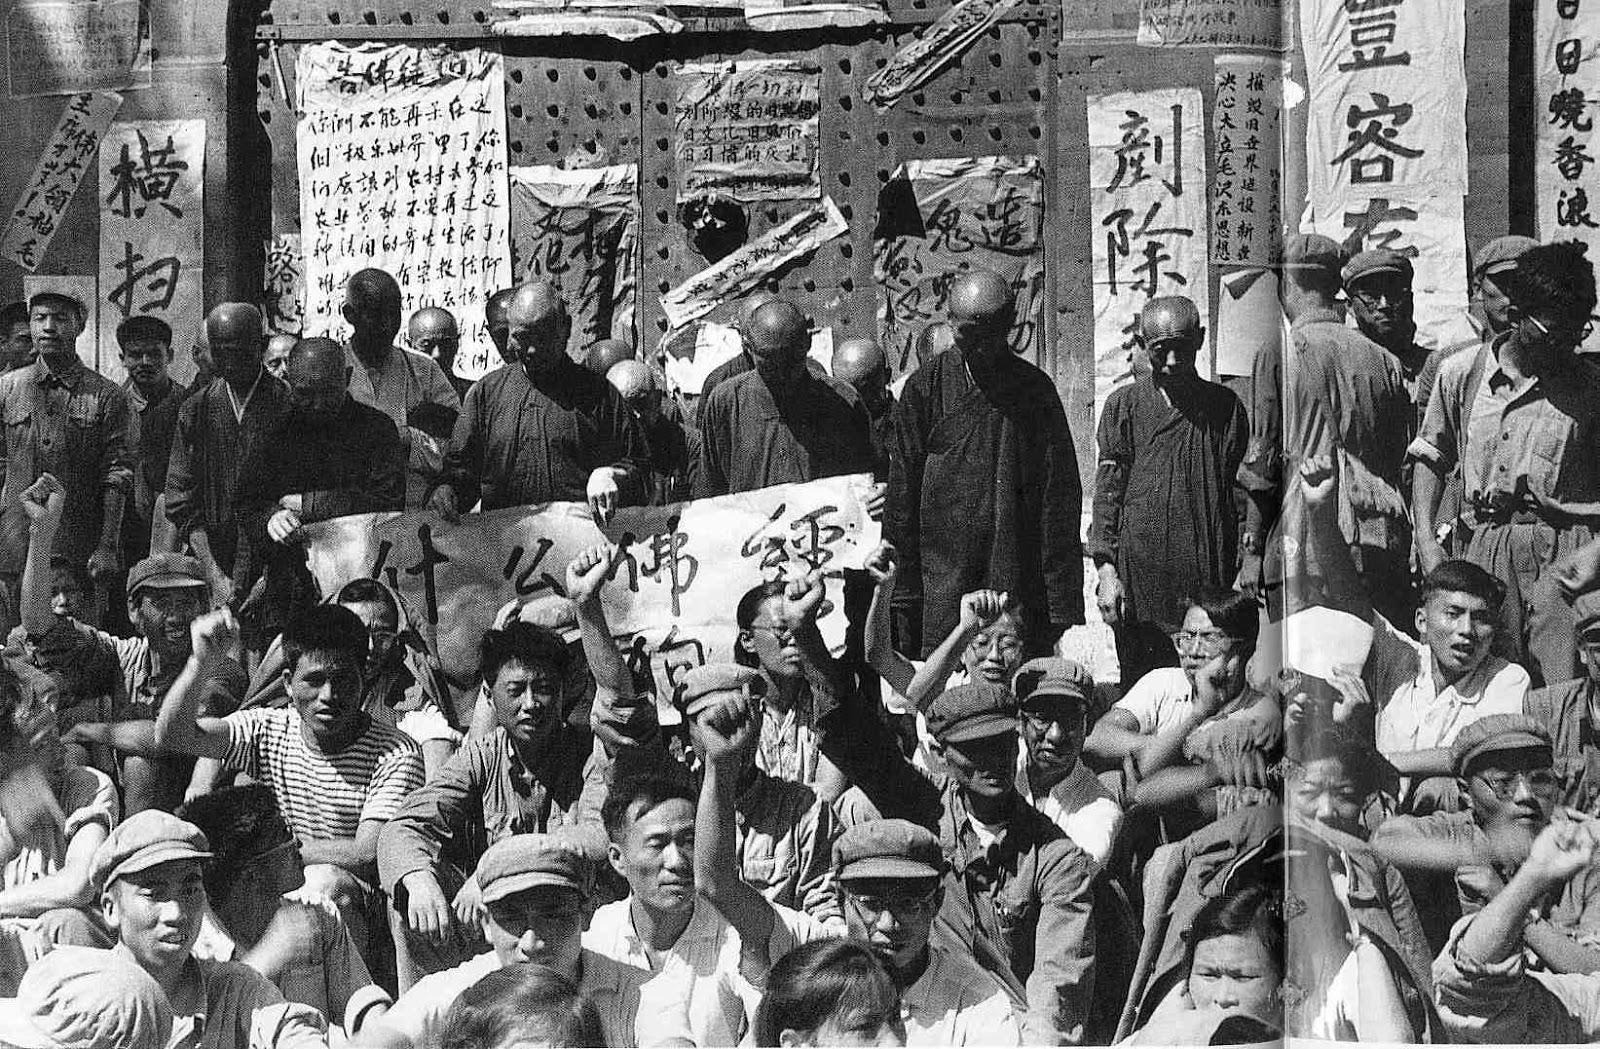 Большой скачок культурной революции. Мао Цзэдун хунвейбины. Культурная революция Мао Цзэдуна. Культурная революция Китай 1966. Национальная революция в Китае 1925.